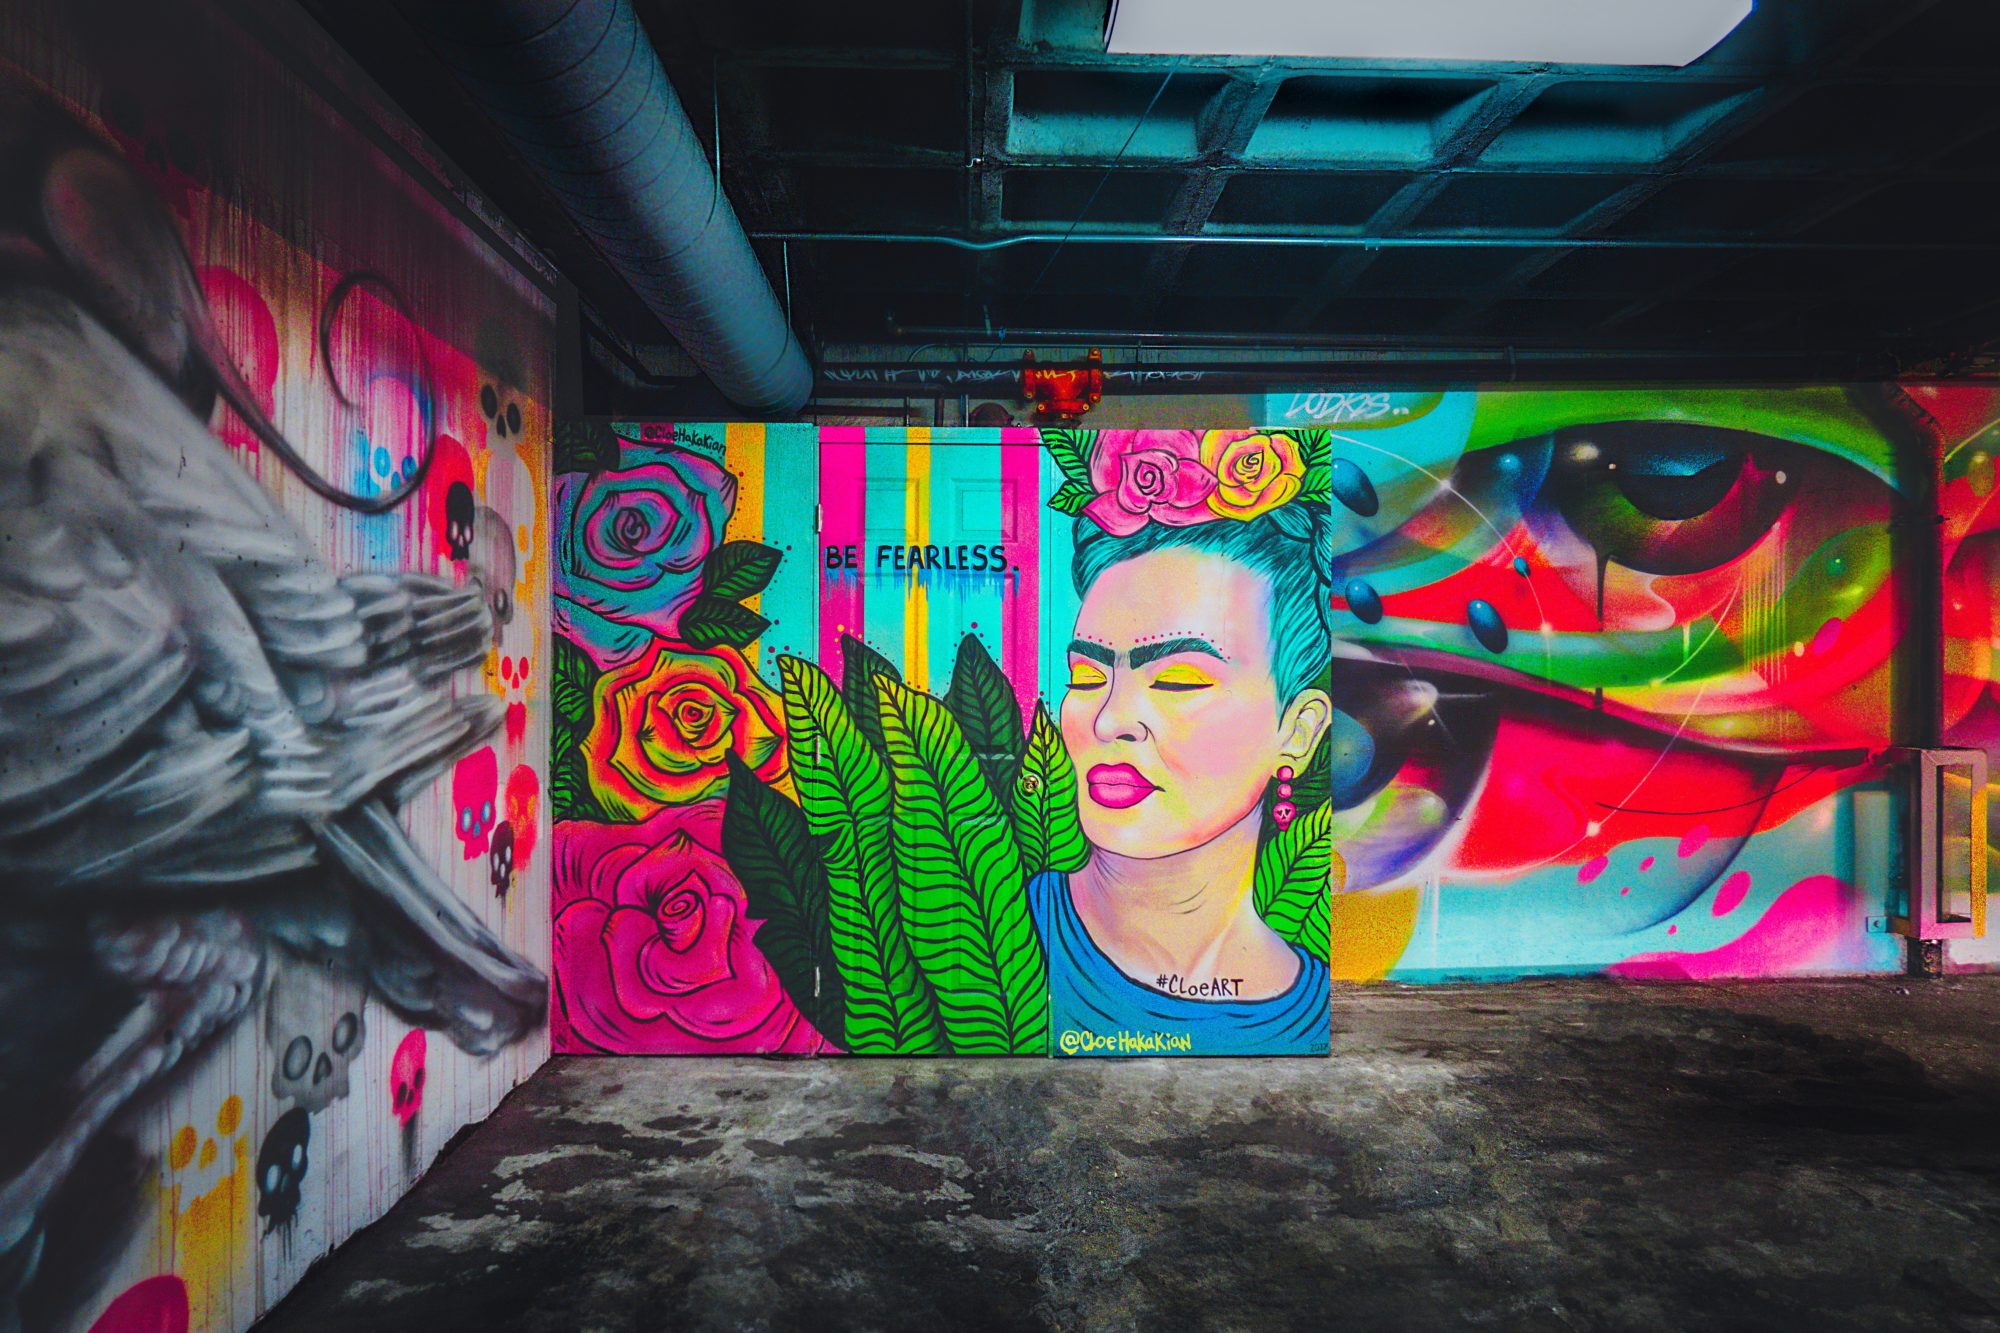 Frida Kahlo in L.A. Ihre Fans gestalteten diese Wand "Be Fearless" ist das Motto.